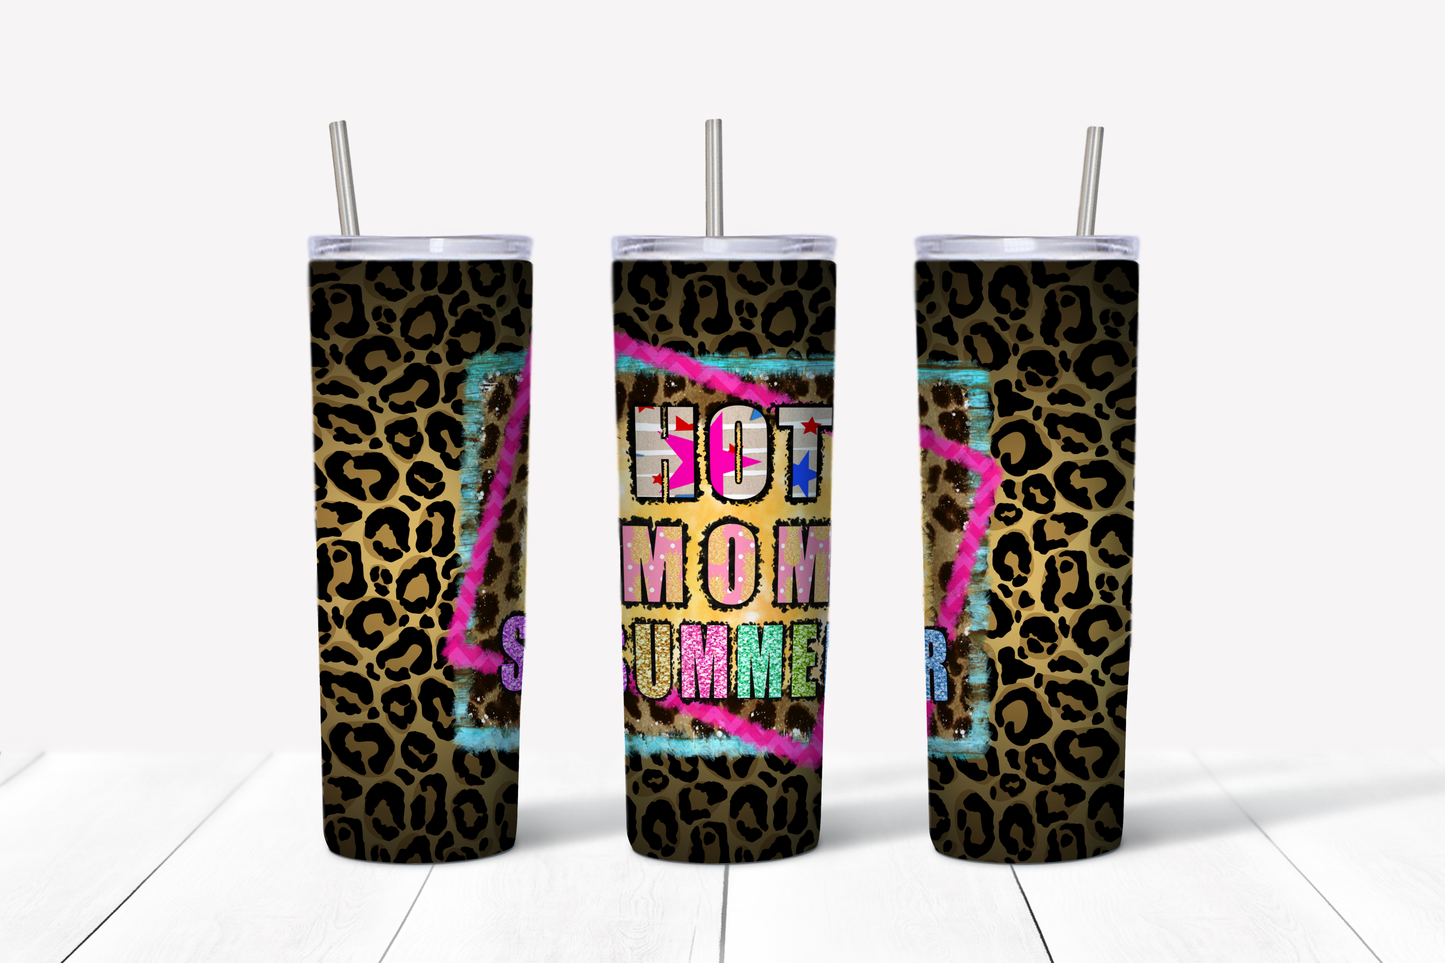 Hot Mom Summer (Leopard) 20 oz Tumbler